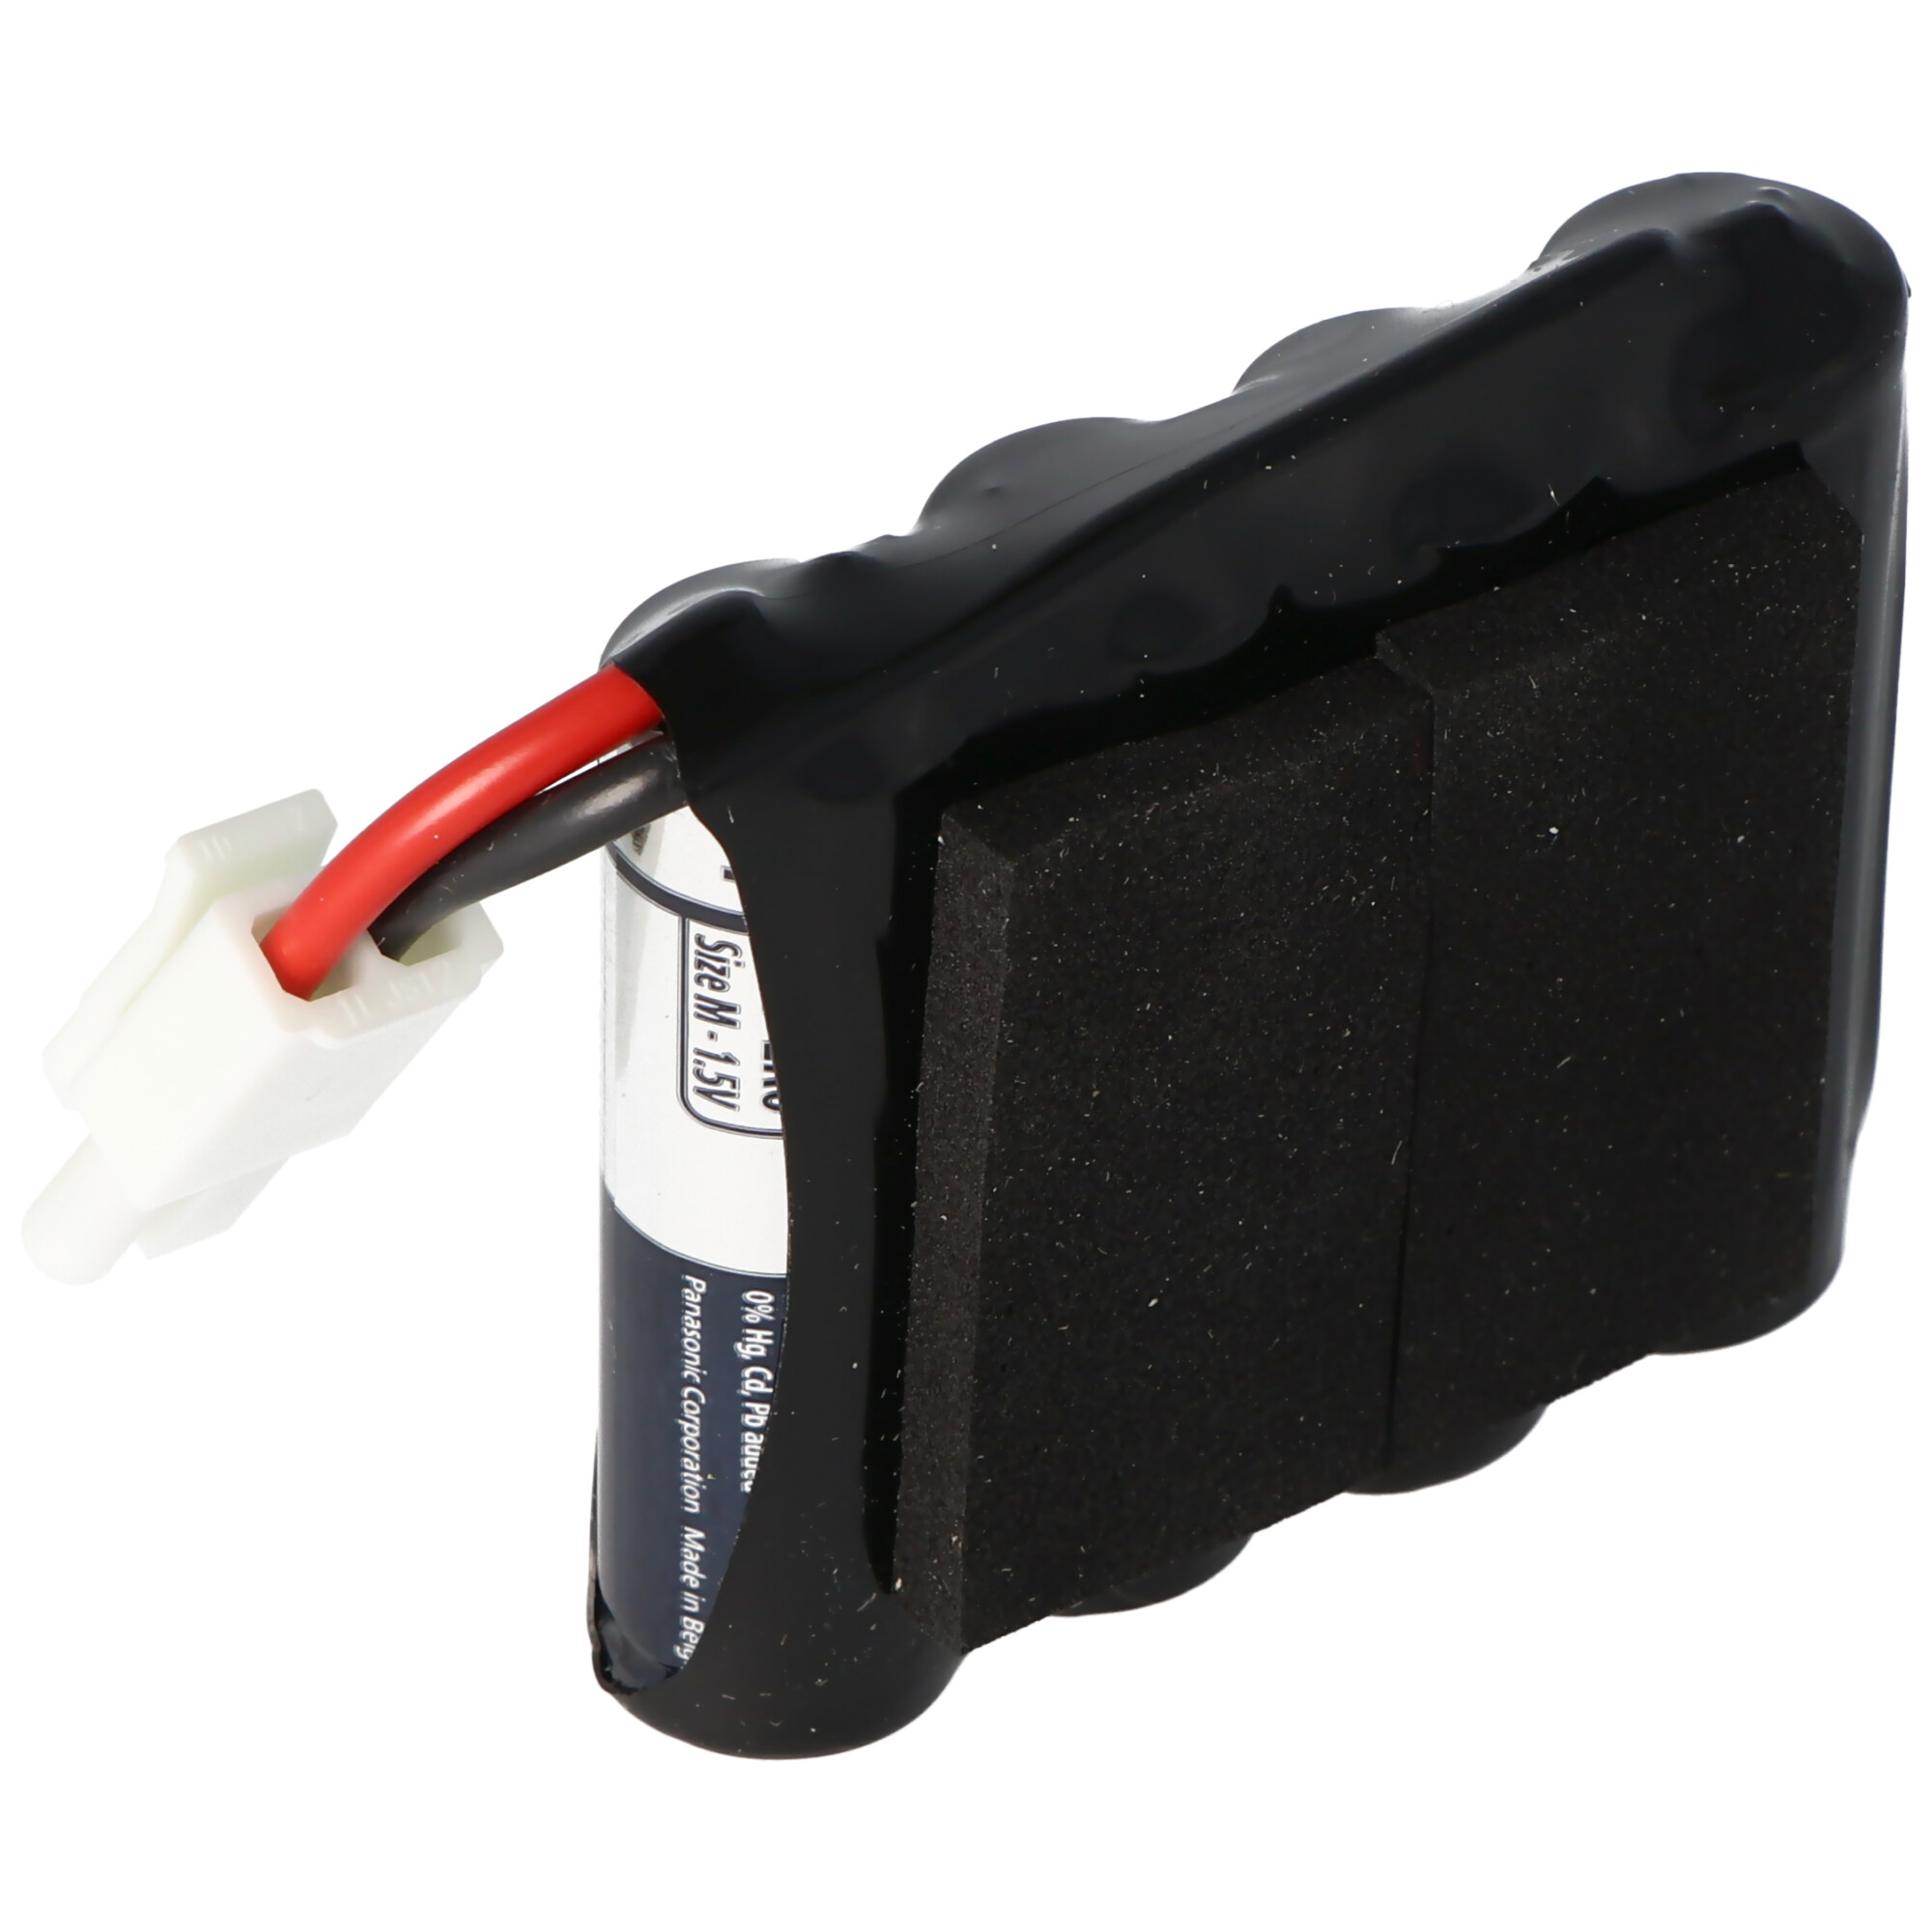 6 Volt Batterie passend für SAG Schlagbaum Schließanlagen, Typ 3850000.020.000, 3850000020000 mit Kabel und Stecker